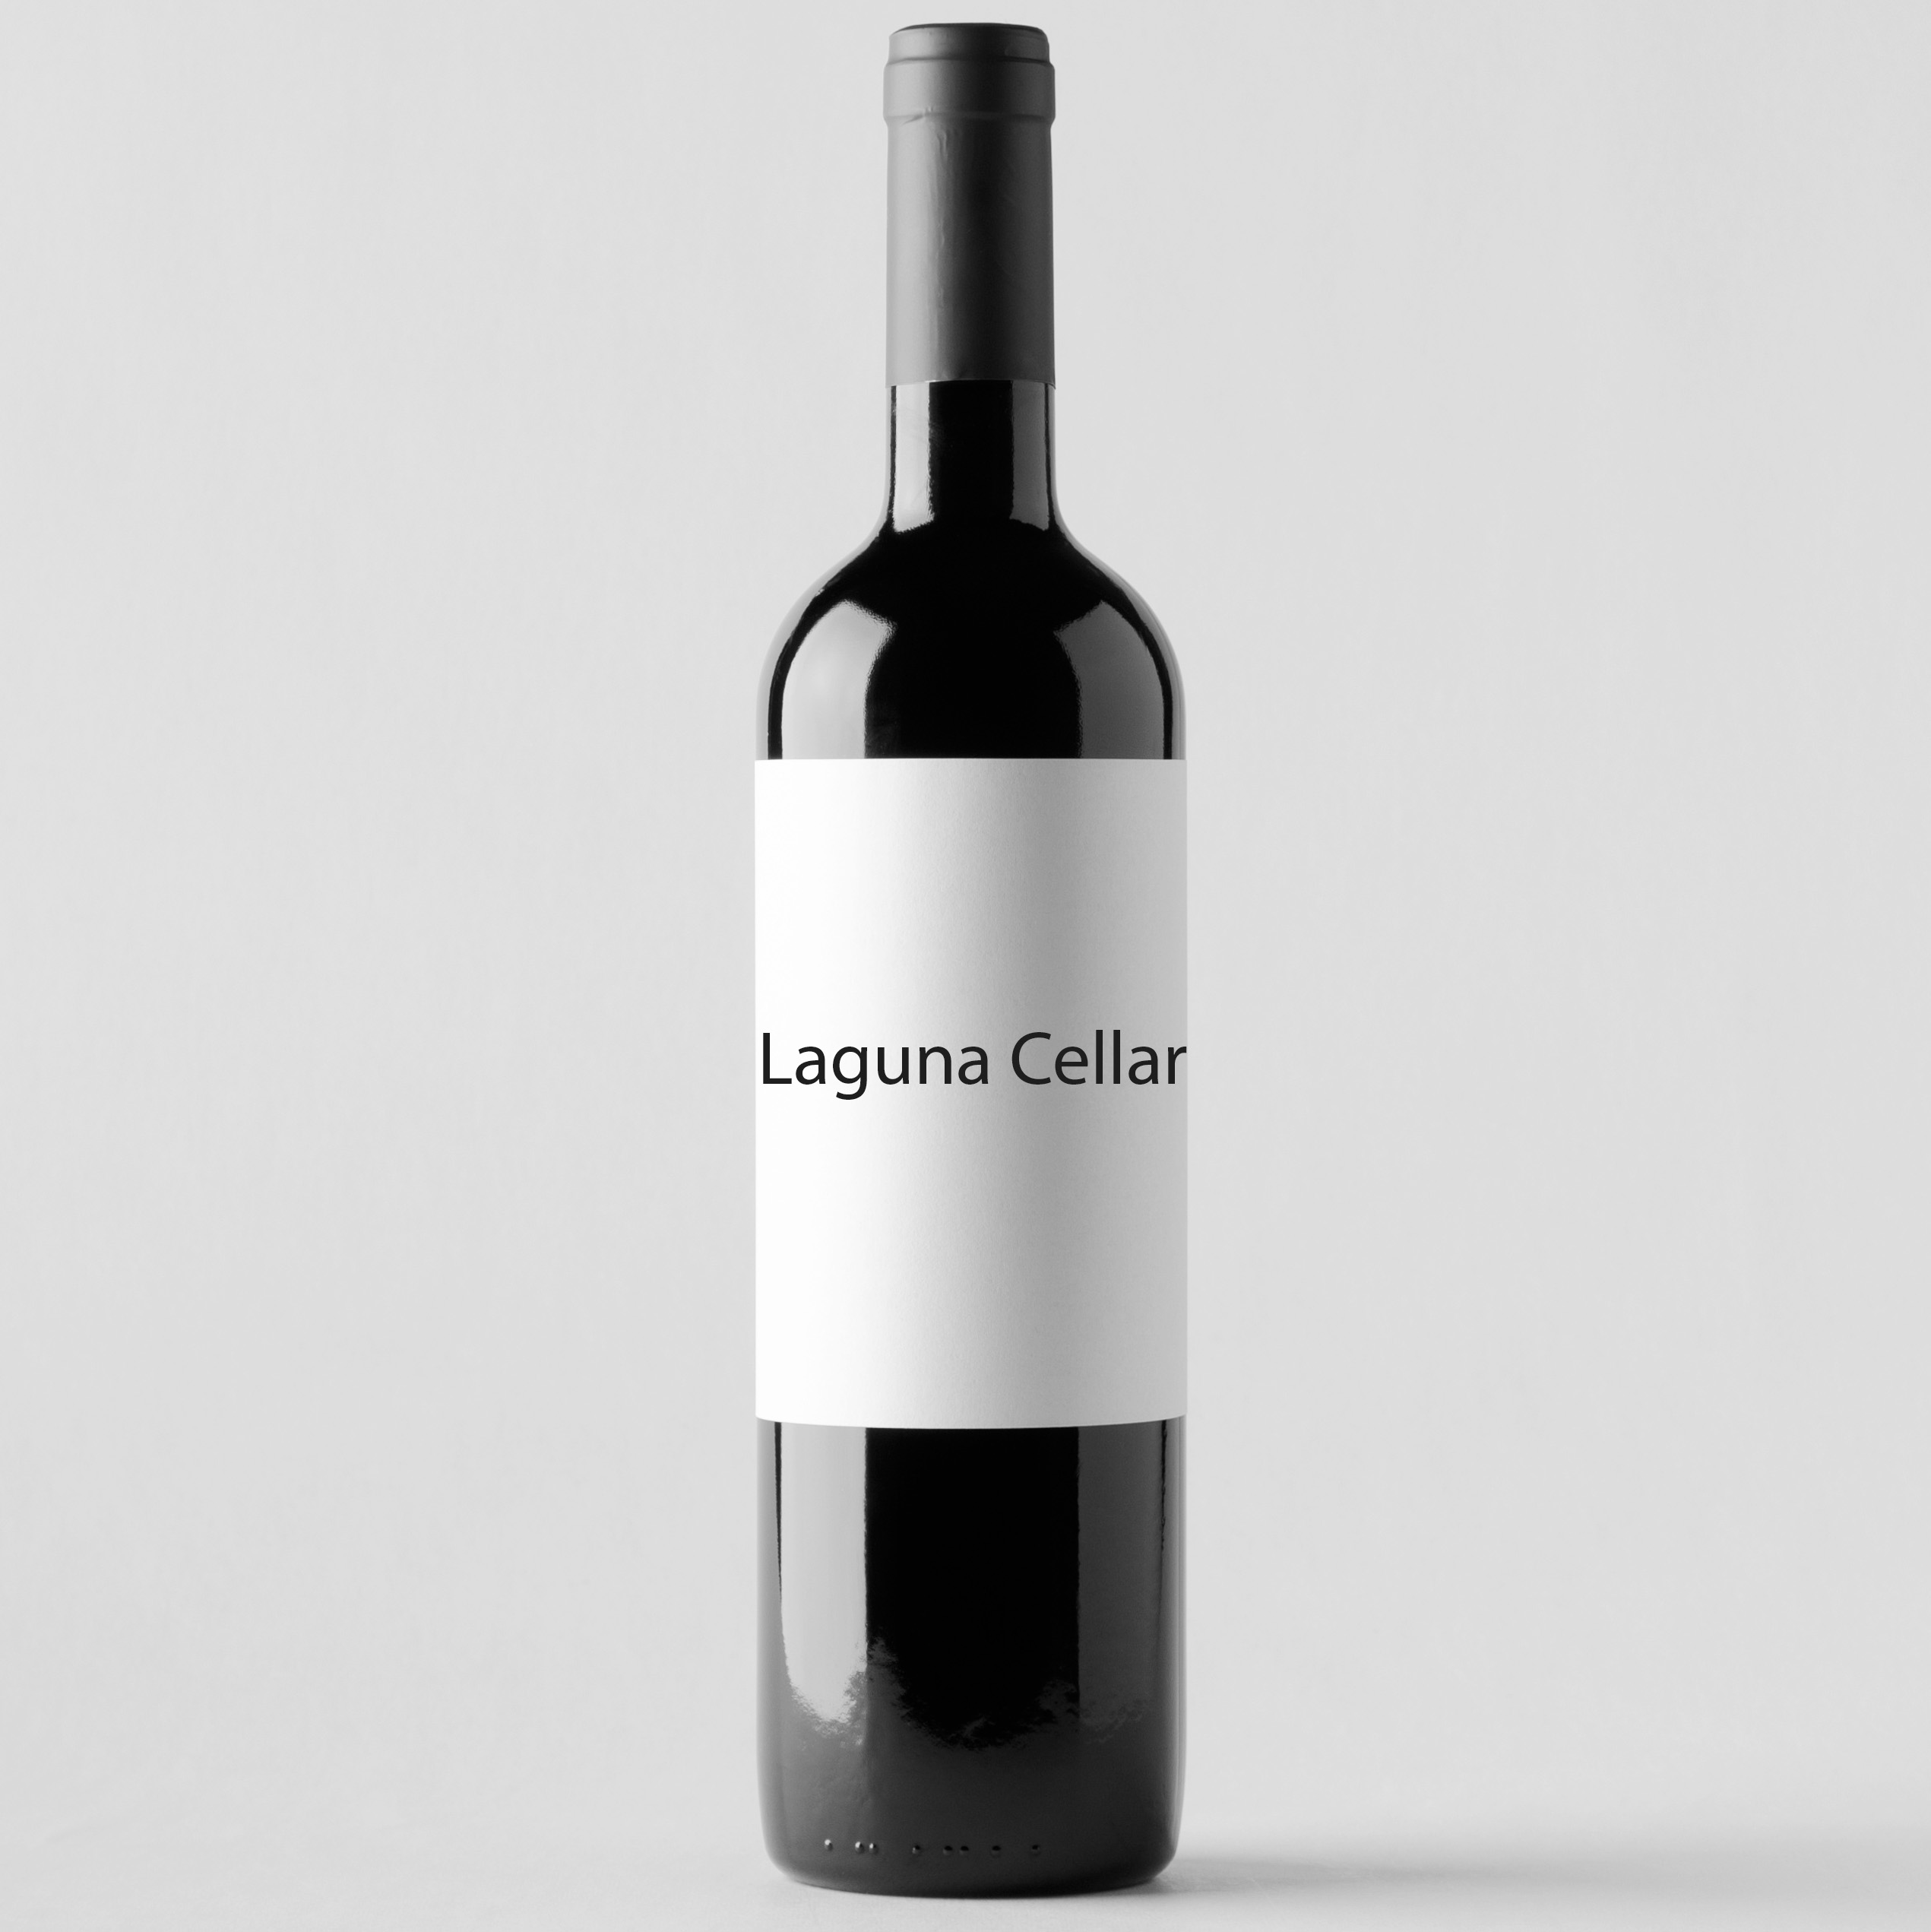 Laguna Cellar featuring Alter Ego de Palmer 2014